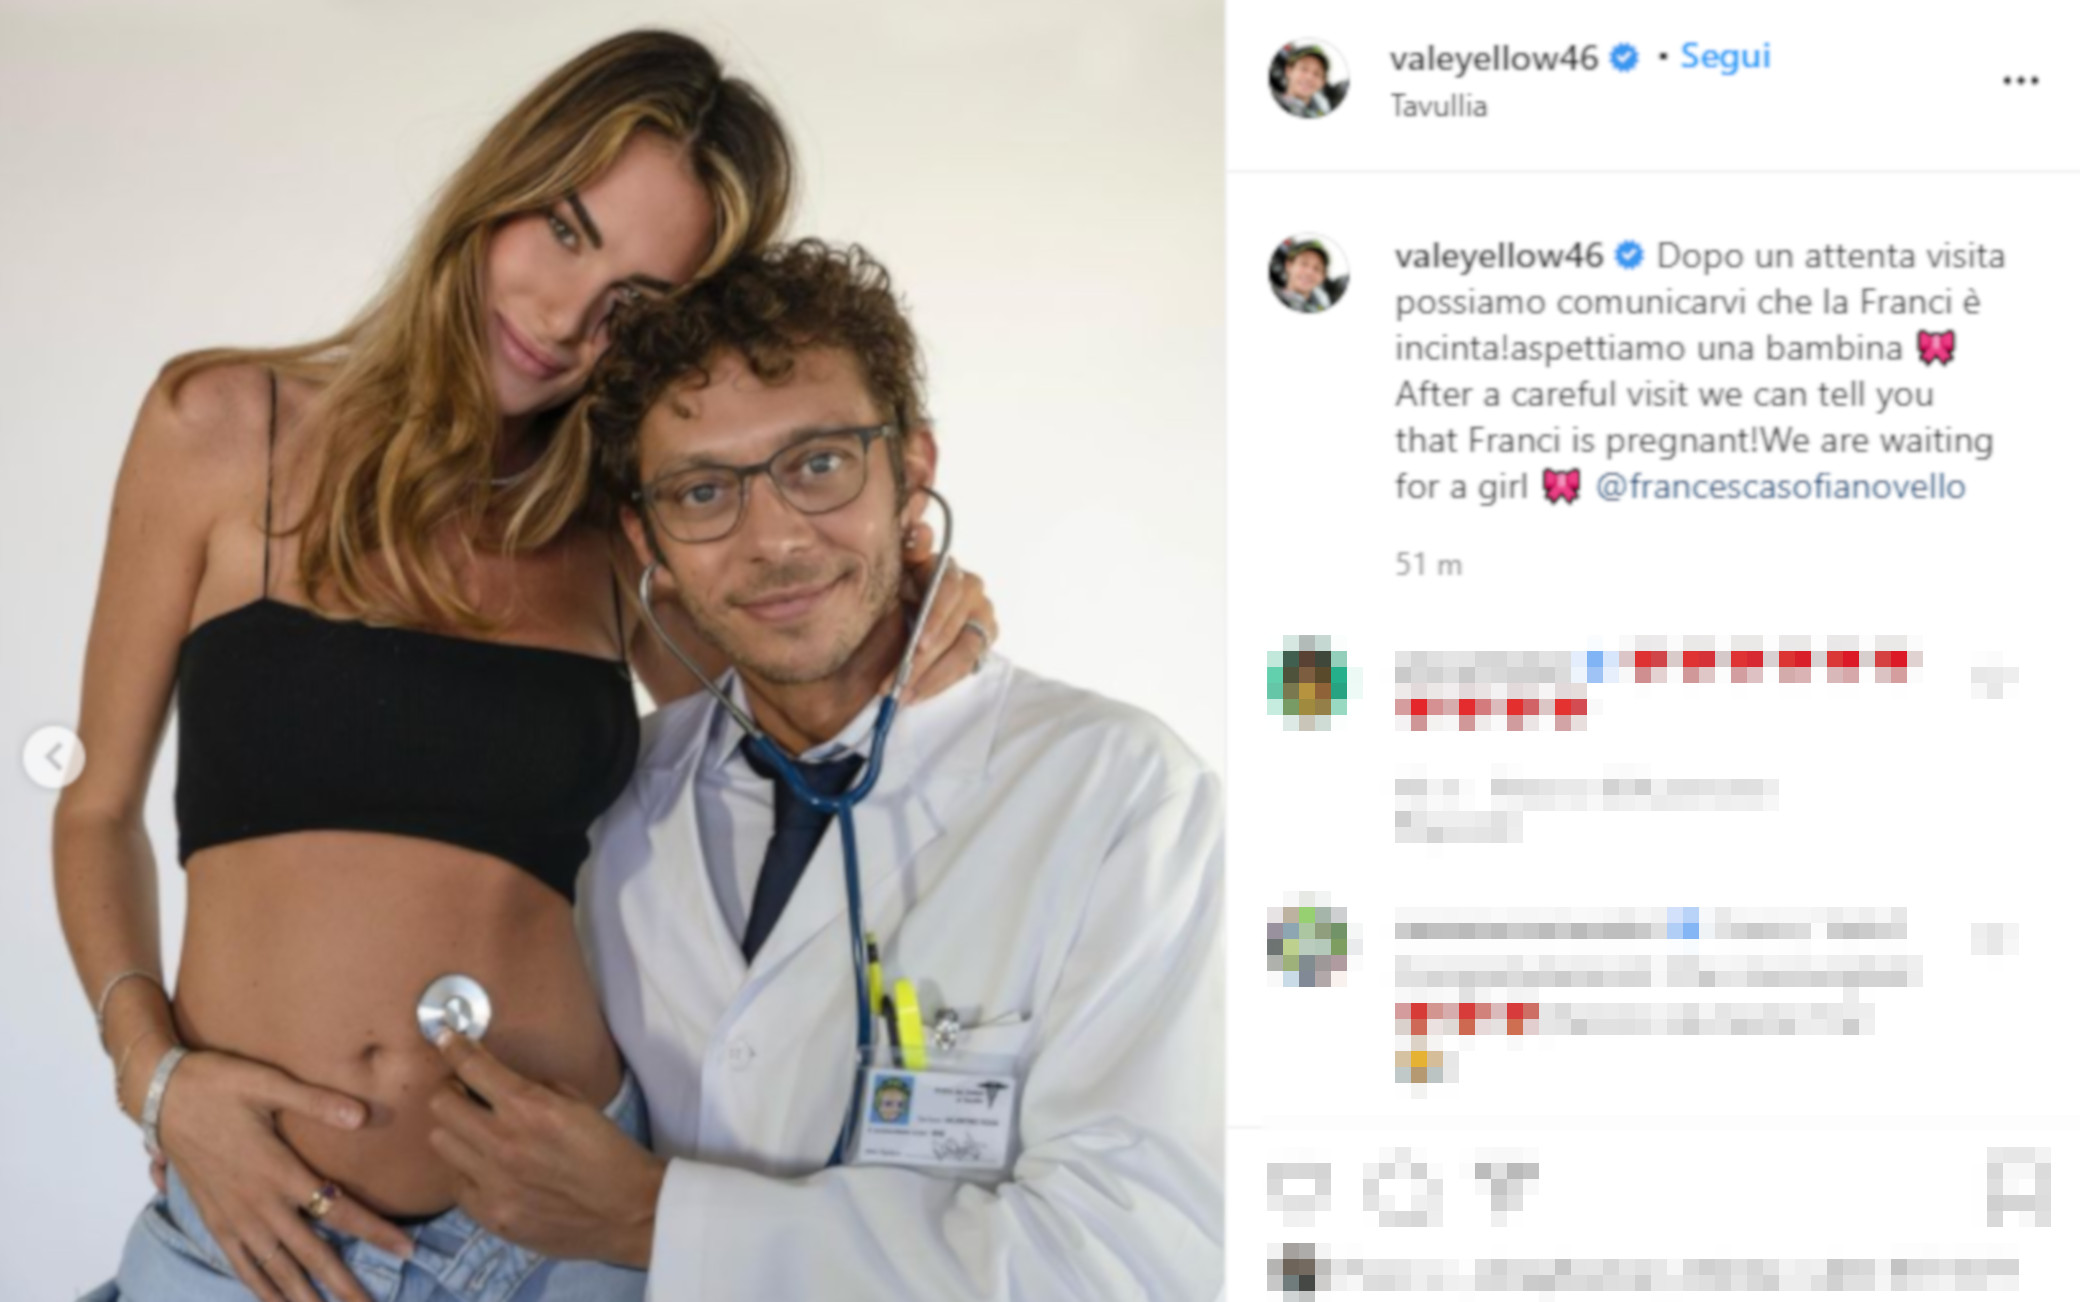 News Nazionali. Valentino Rossi annuncia:” La Franci è incinta: aspettiamo una bambina”. Presto le nozze?